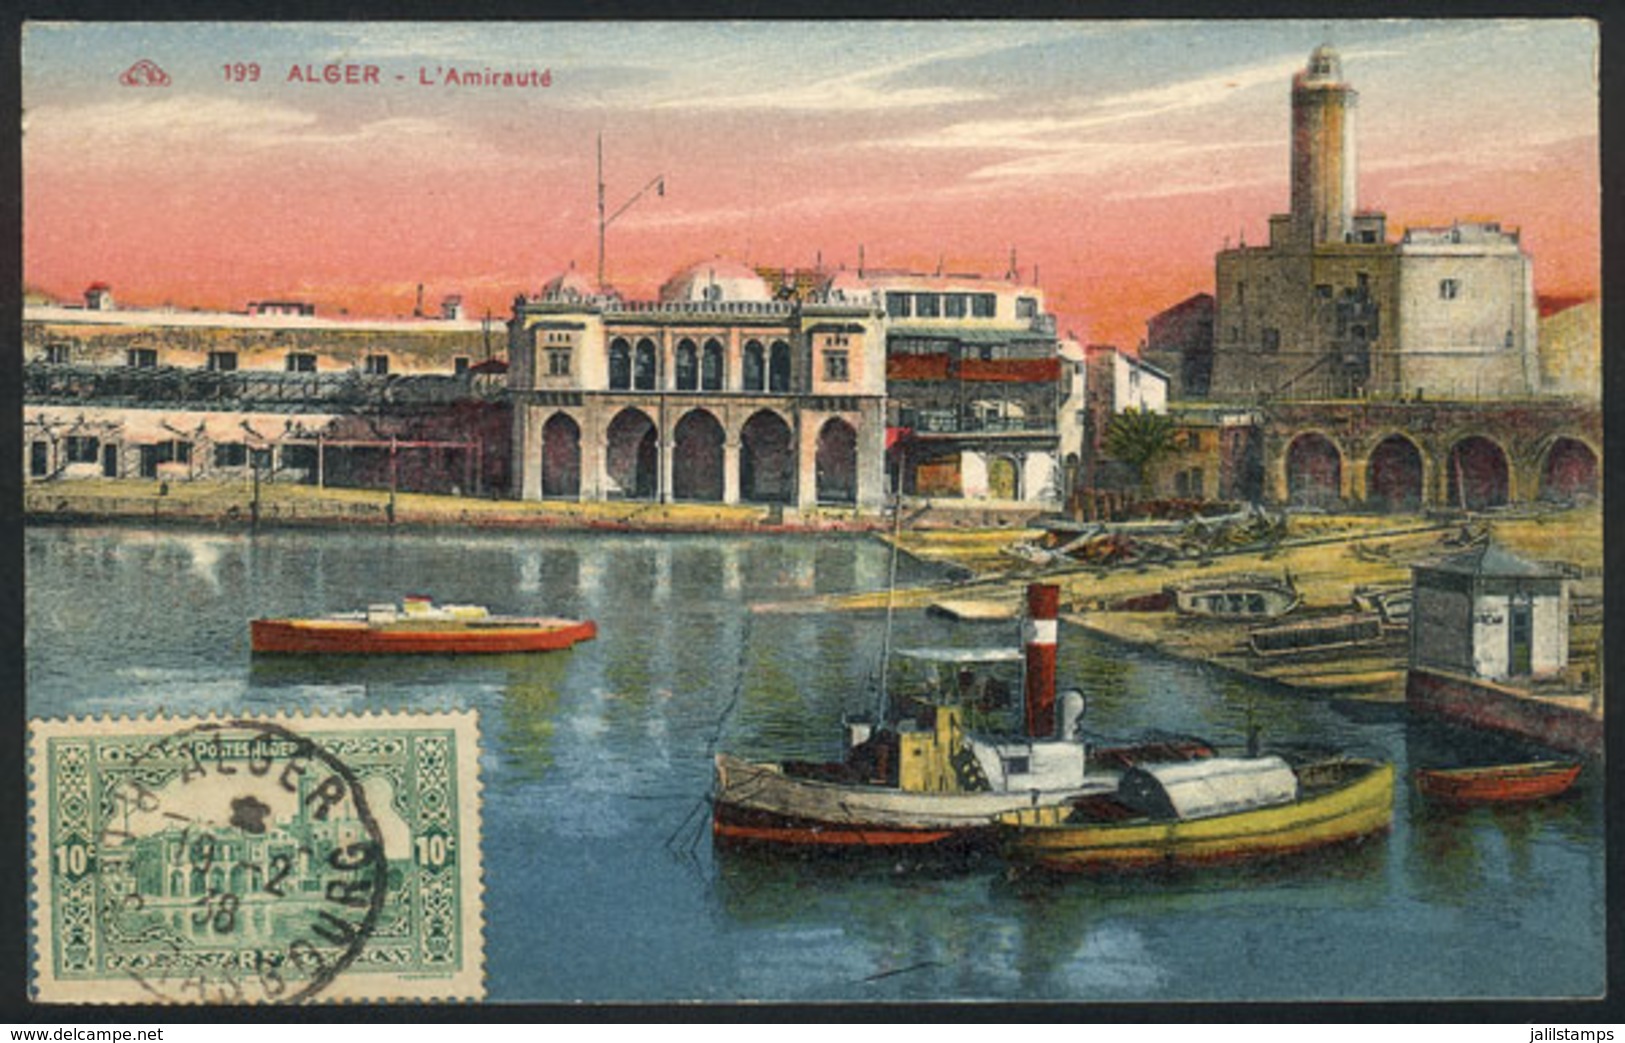 ALGERIA: ALGIERS: L'Amiraute, Architecture, Old Maximum Card, VF Quality - Maximumkarten